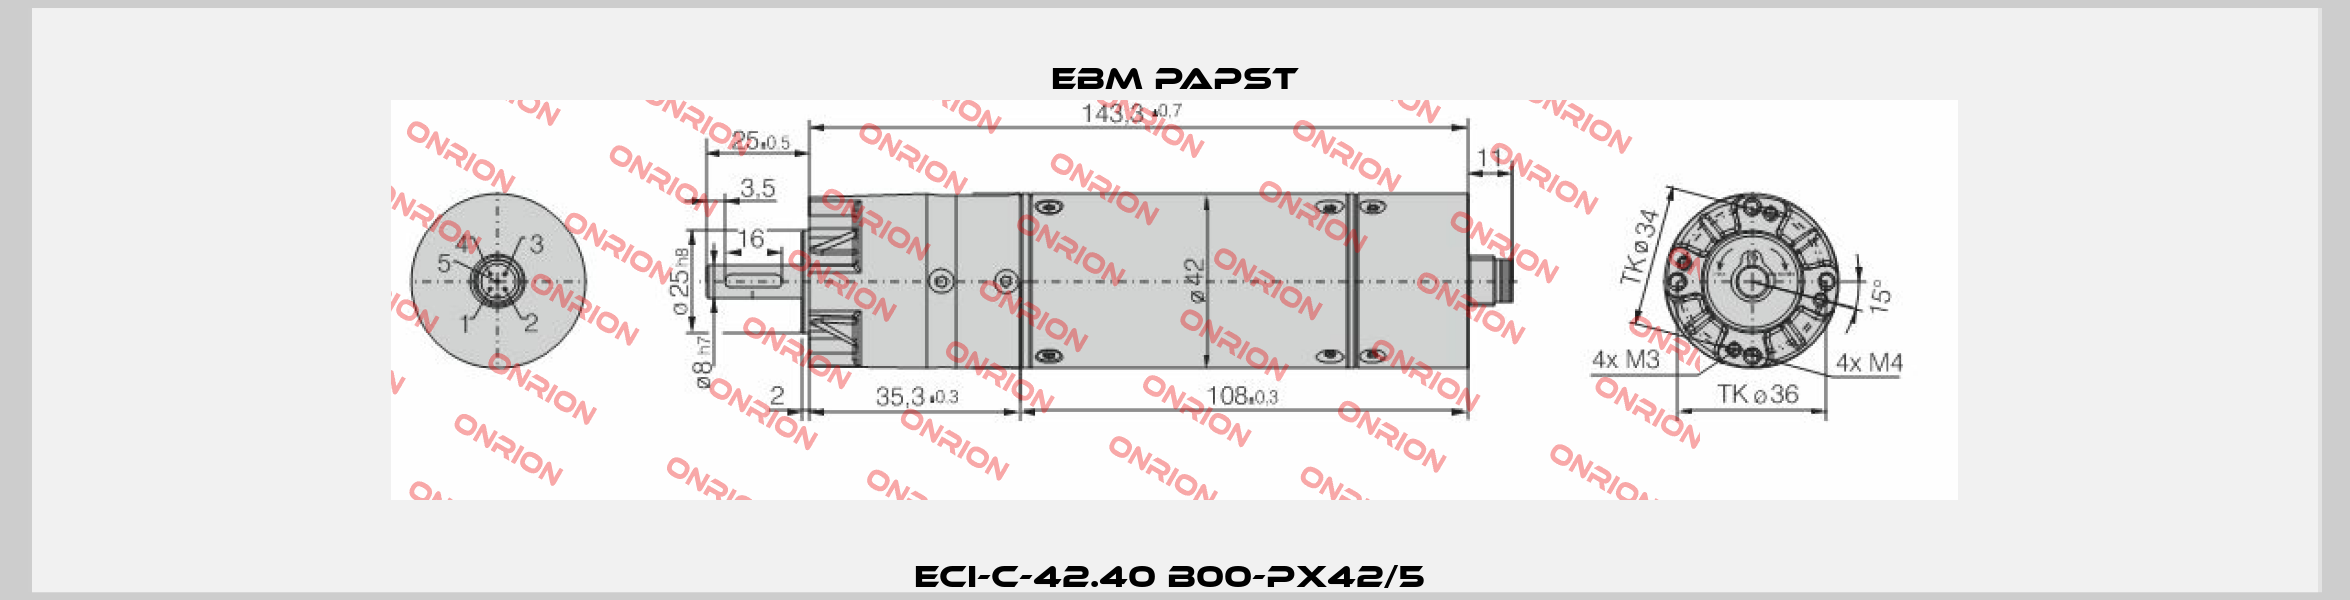 ECI-C-42.40 B00-PX42/5  EBM Papst